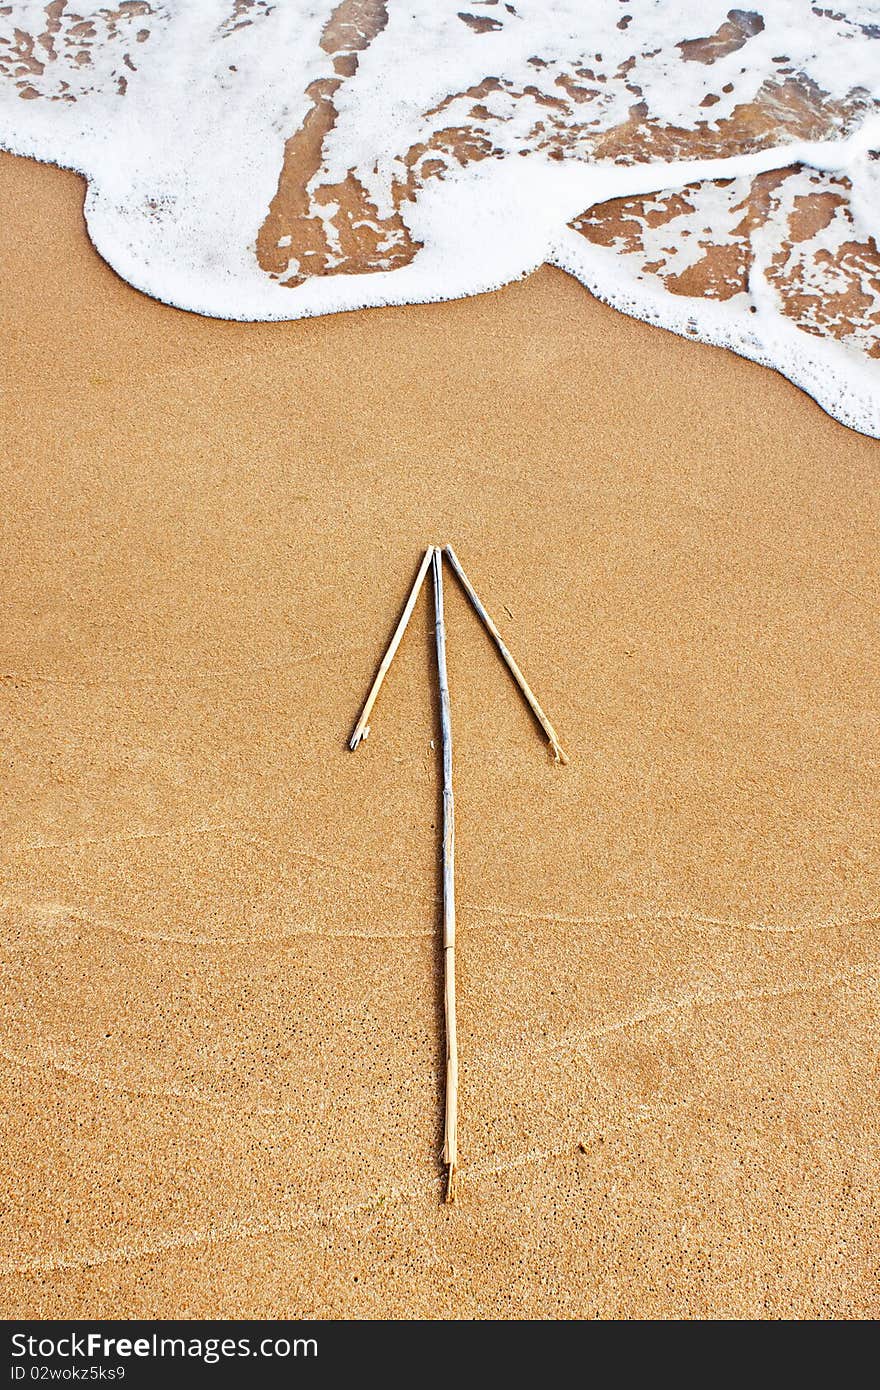 Arrow on the beach in suny summer day